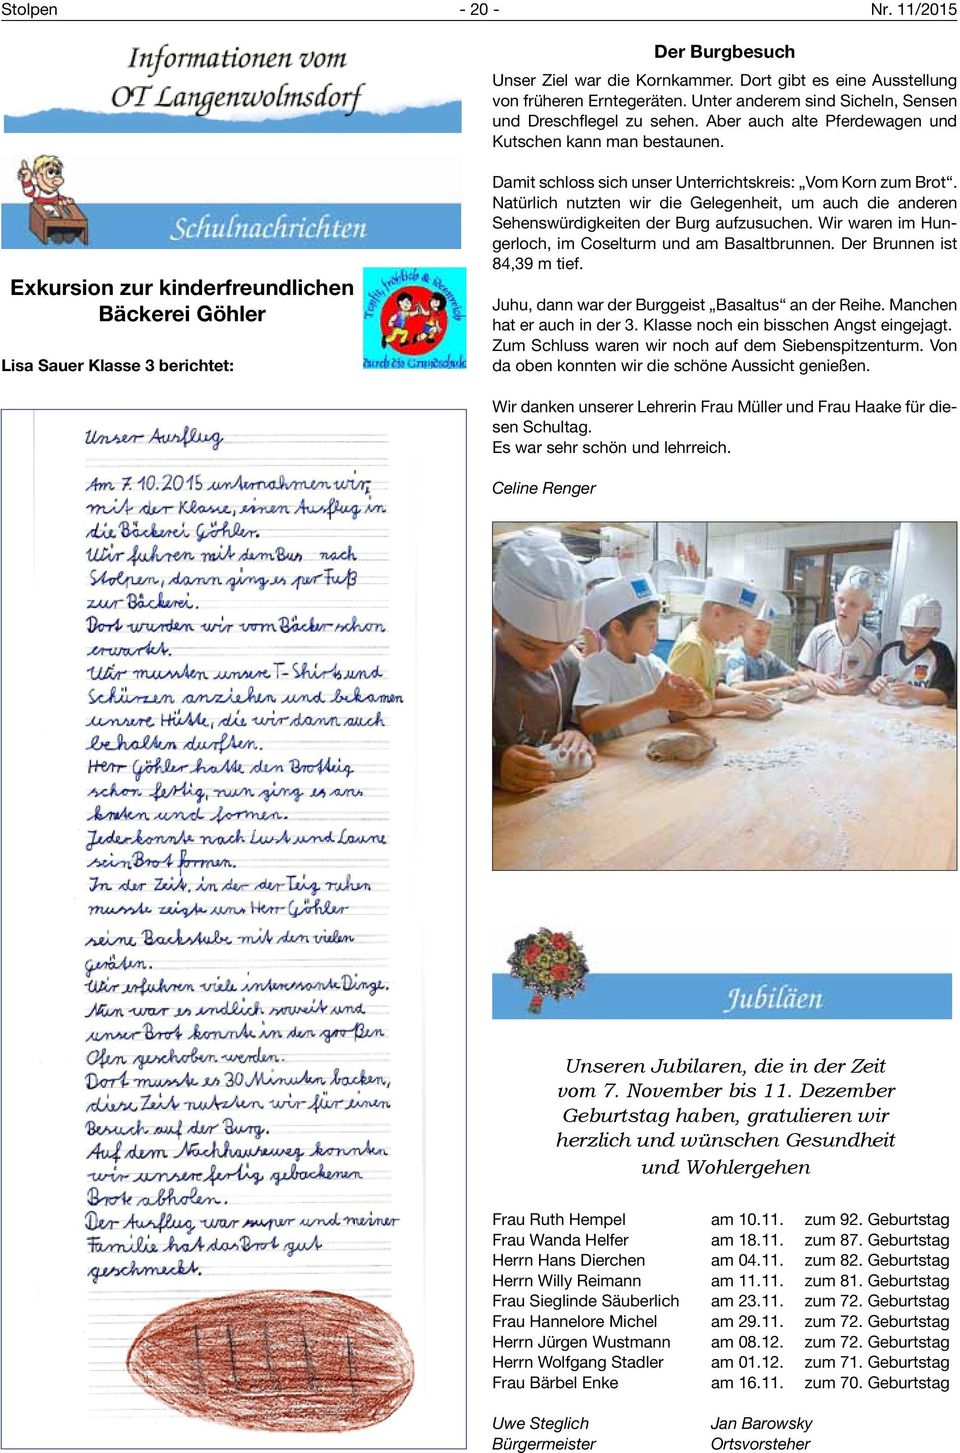 Exkursion zur kinderfreundlichen Bäckerei Göhler Lisa Sauer Klasse 3 berichtet: Damit schloss sich unser Unterrichtskreis: Vom Korn zum Brot.